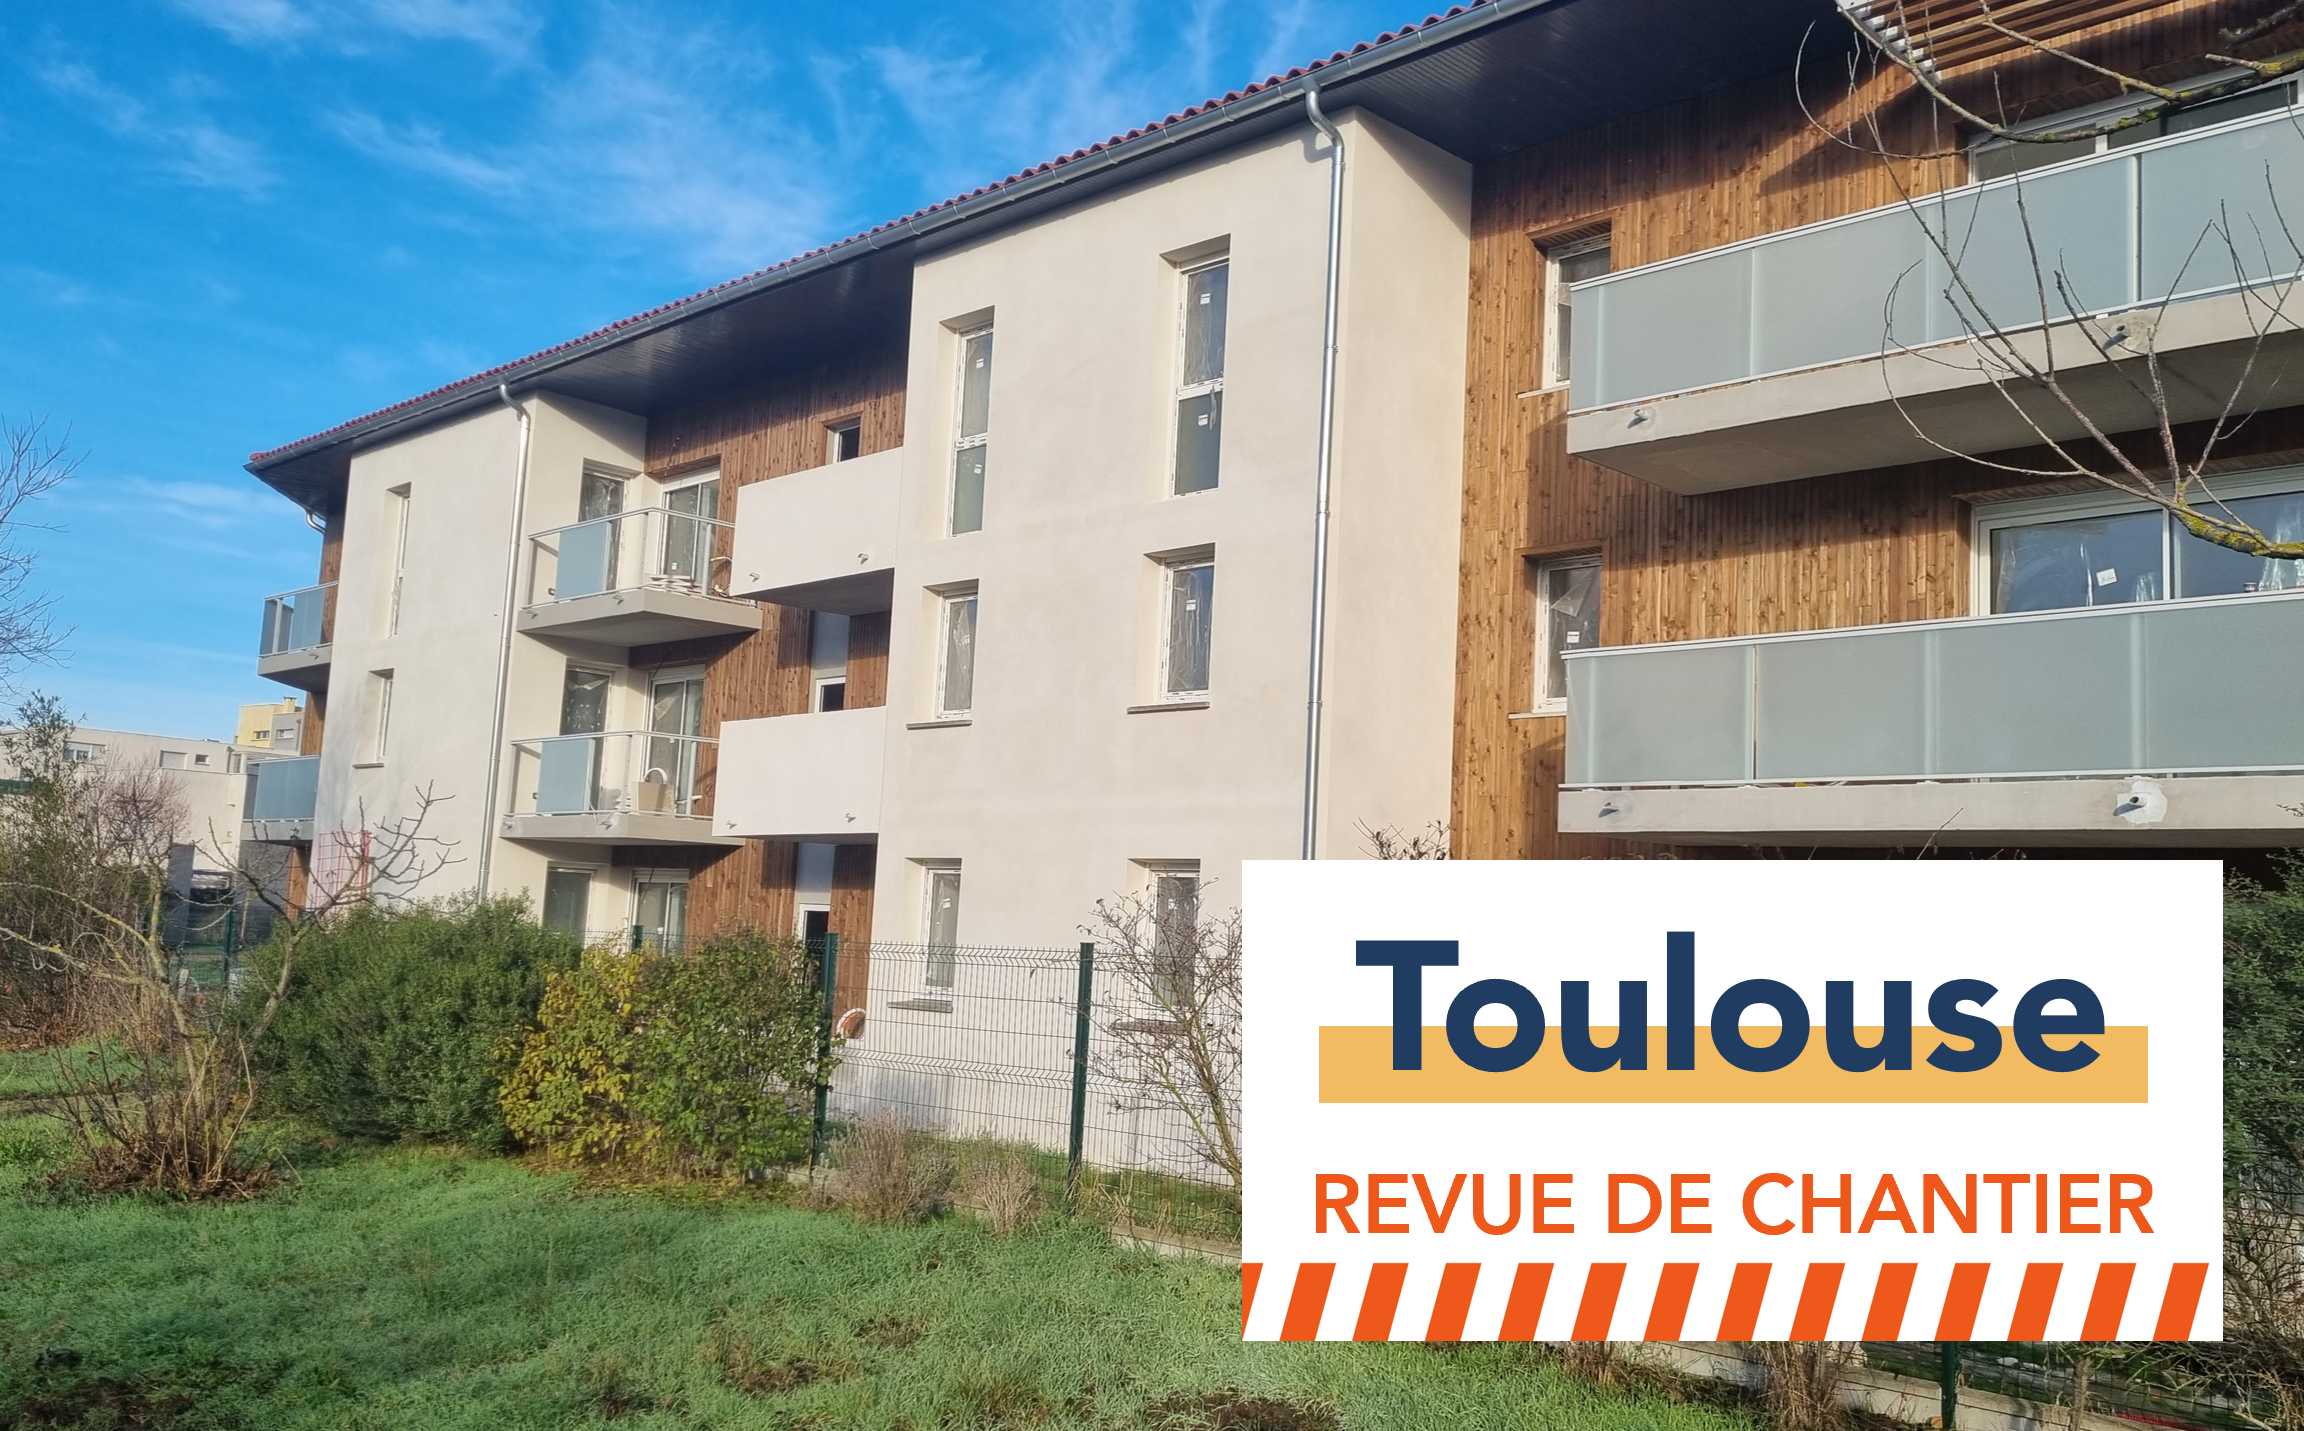 Revue de chantier – Toulouse